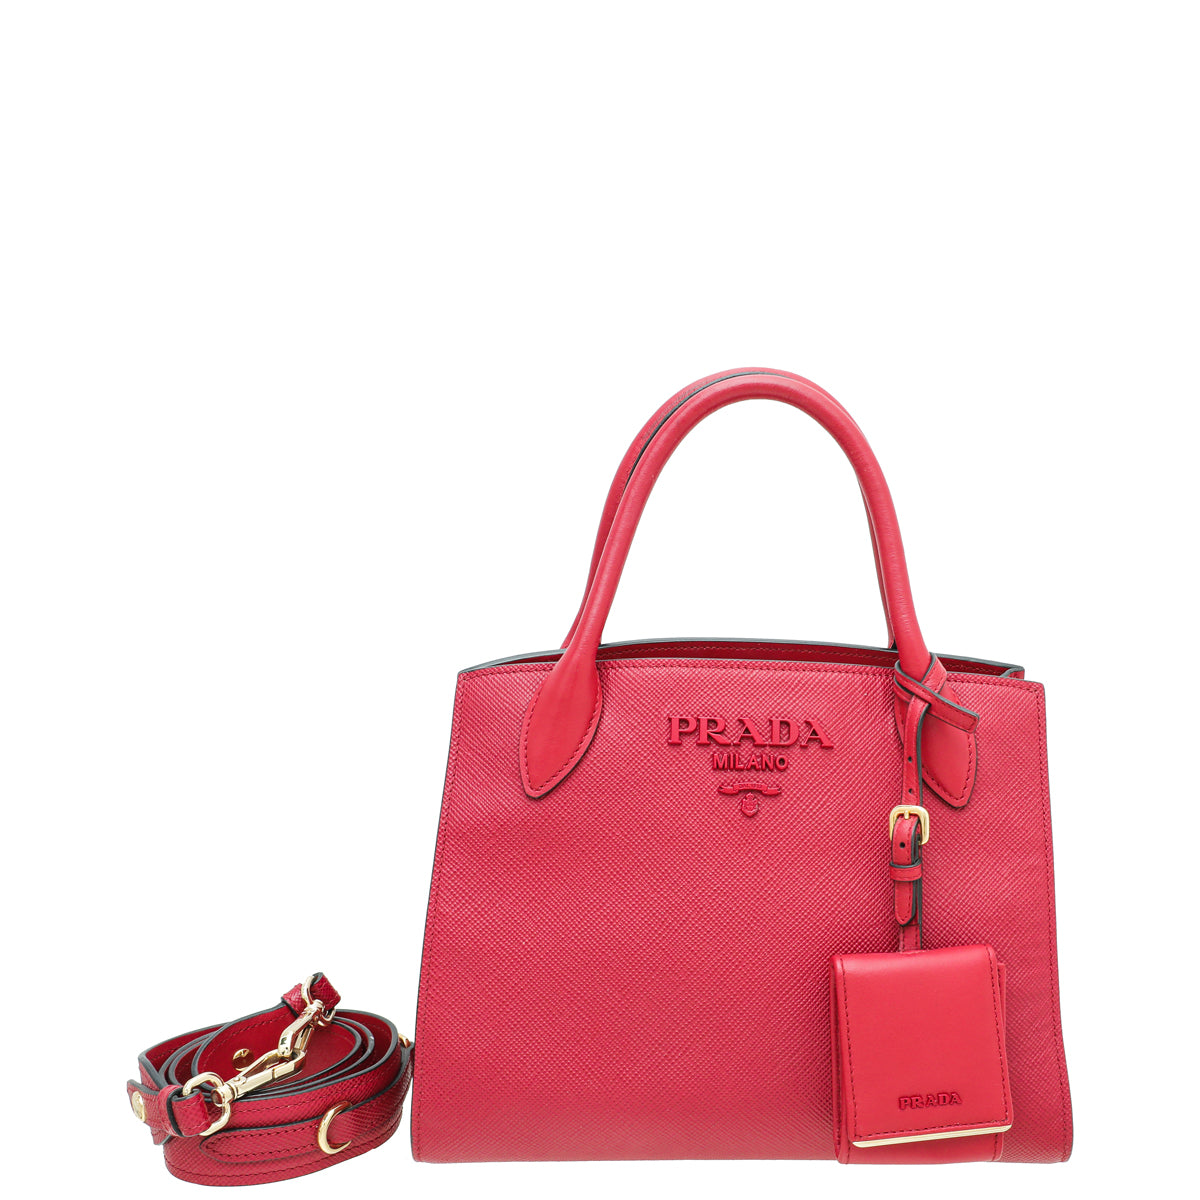 Prada Red Lux Monochrome Small Tote Bag